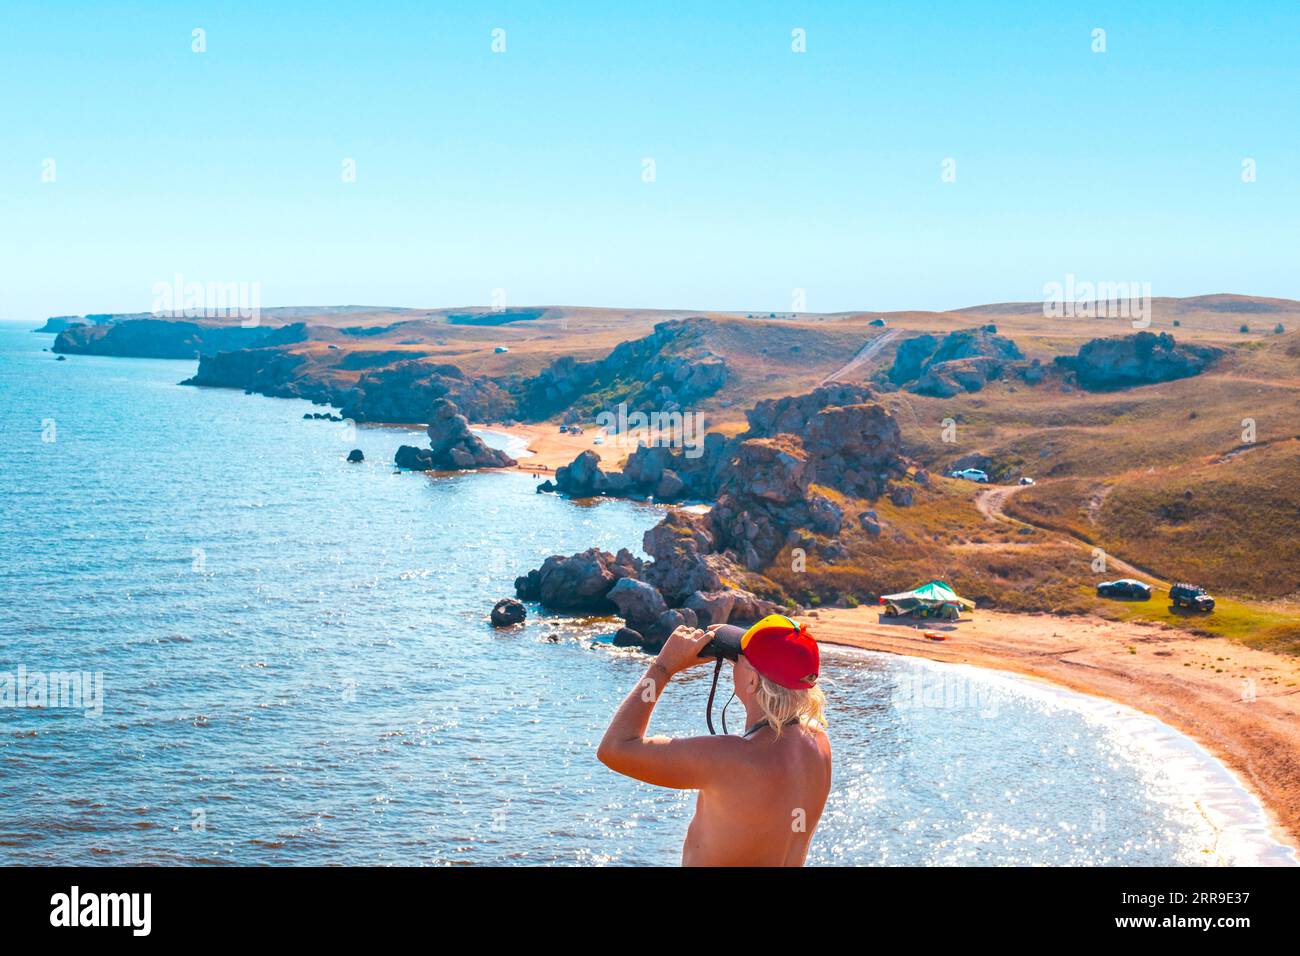 Ein Mann schaut durch ein Fernglas auf die Meereslandschaft. Felsige Küste des Asowschen Meeres, die Strände des Generals. Reise und Tourismus. Stockfoto